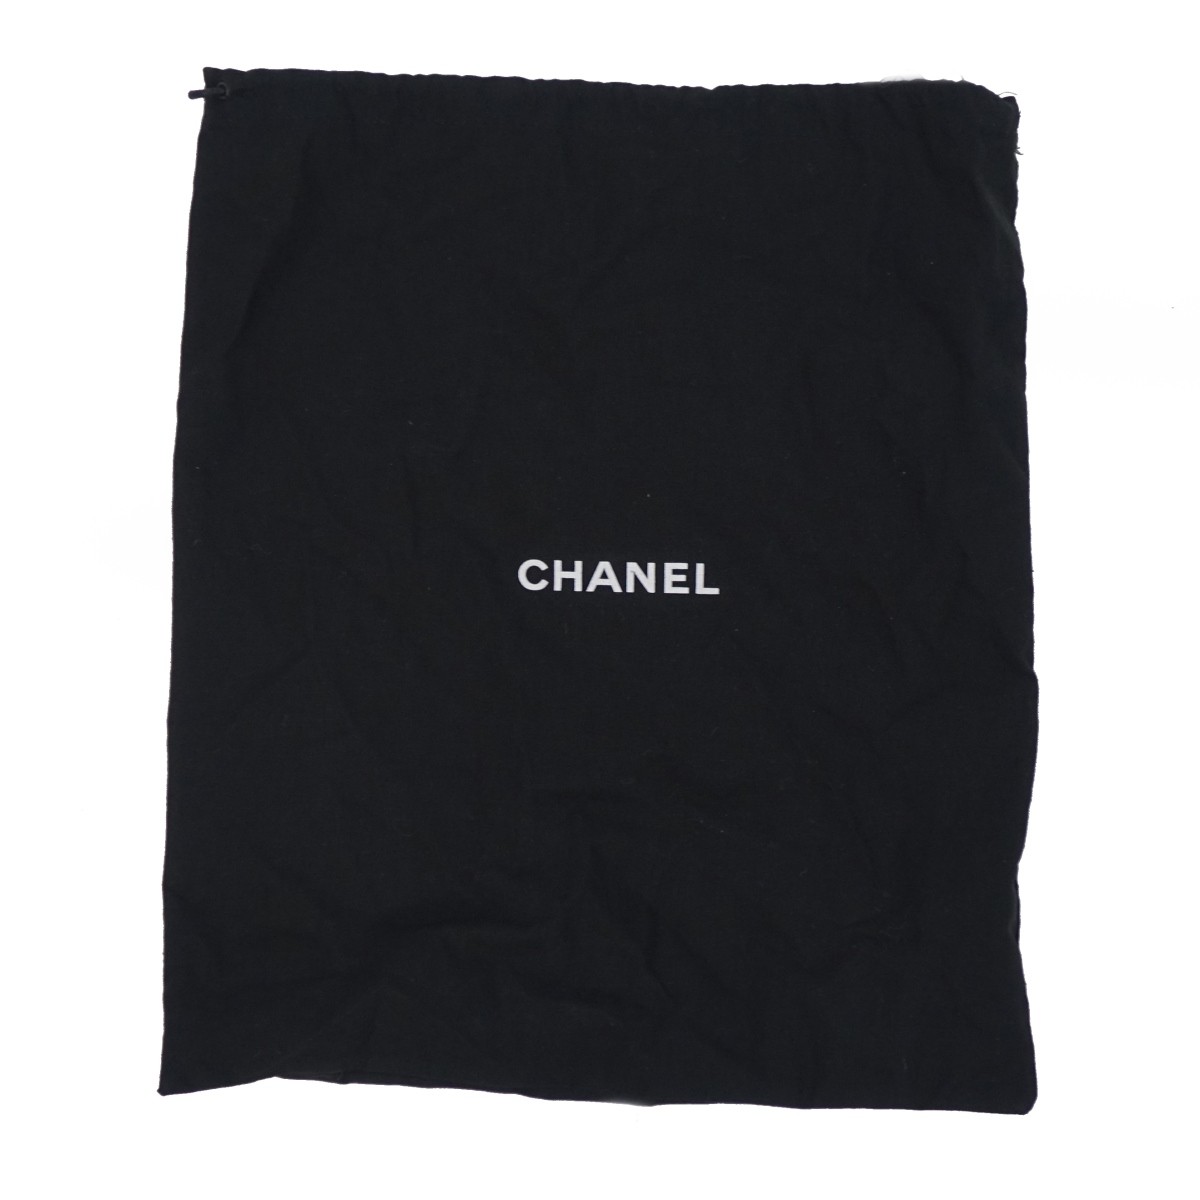 Chanel Chevron Urban Spirit Drawstring Bag.